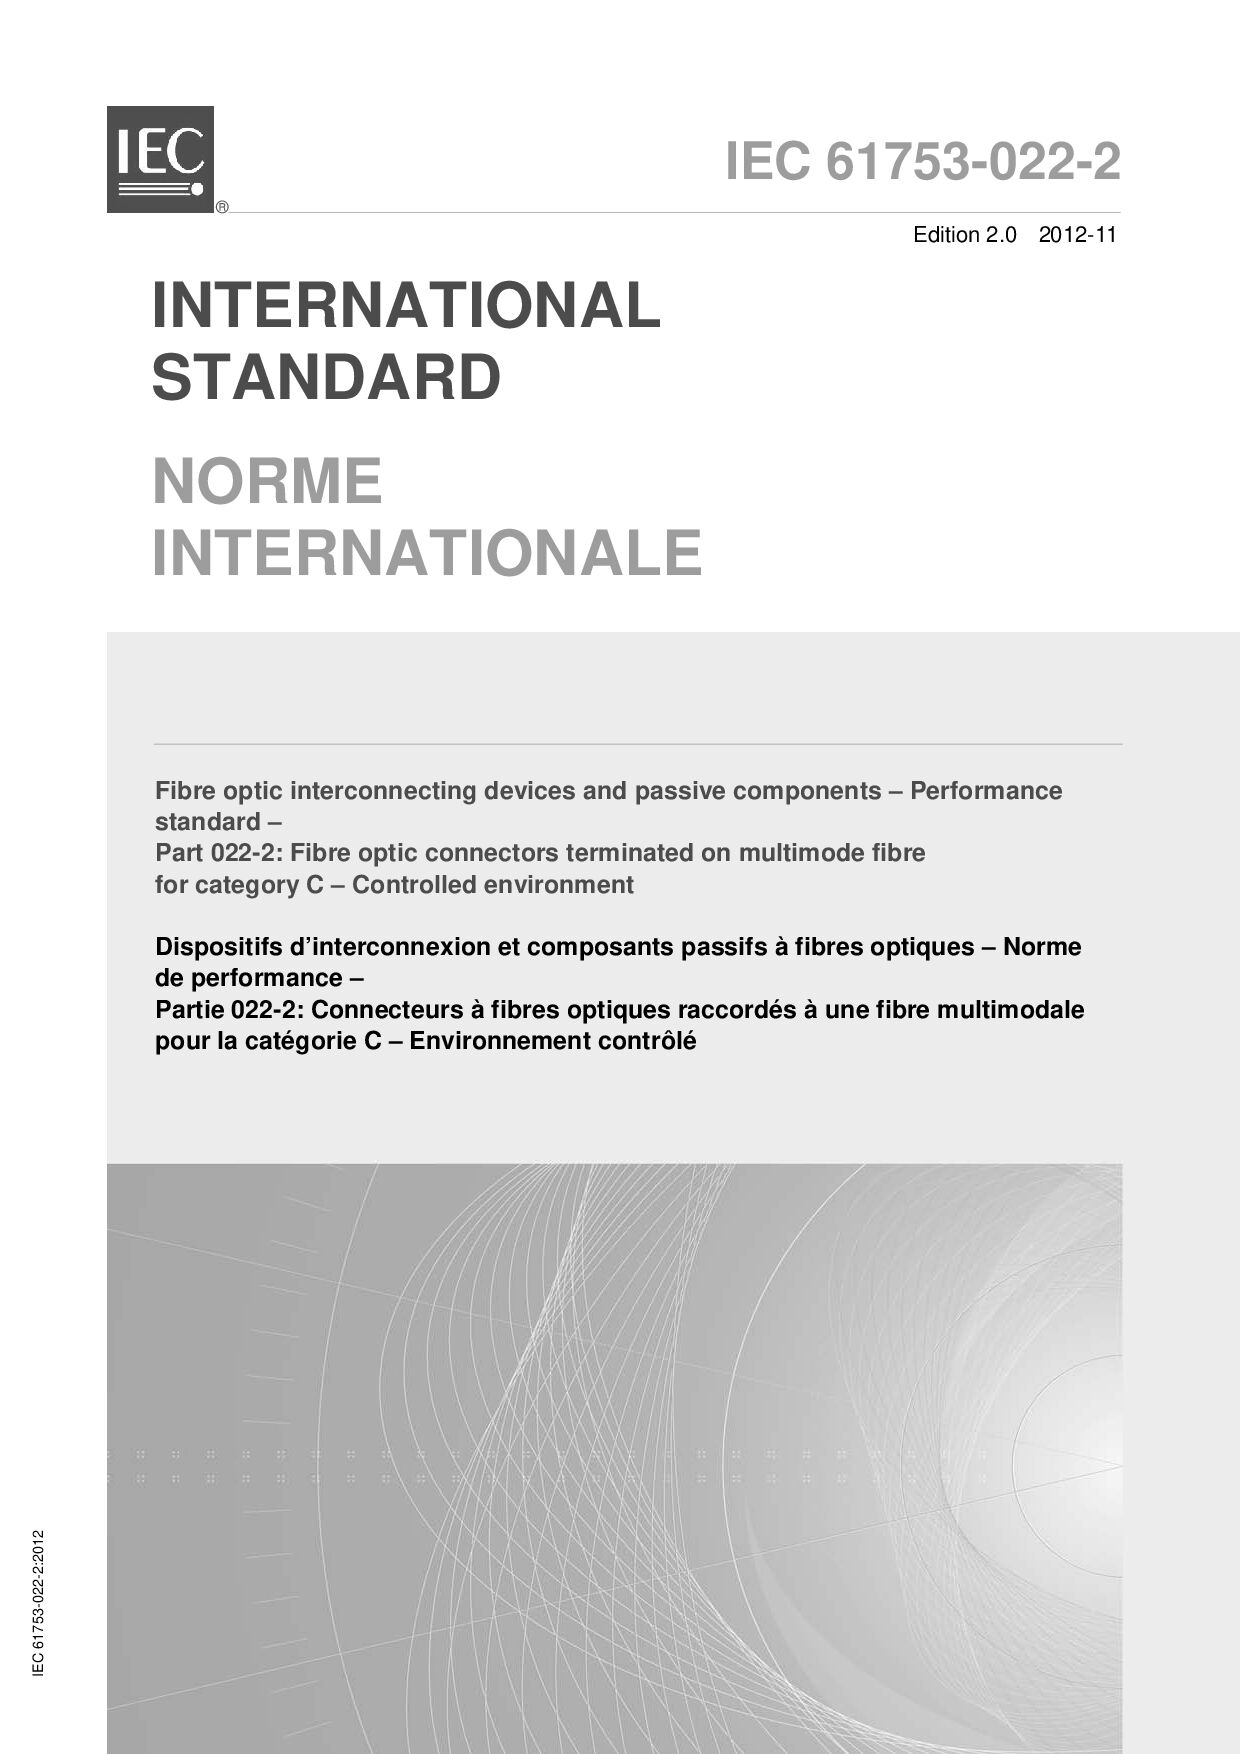 IEC 61753-022-2:2012